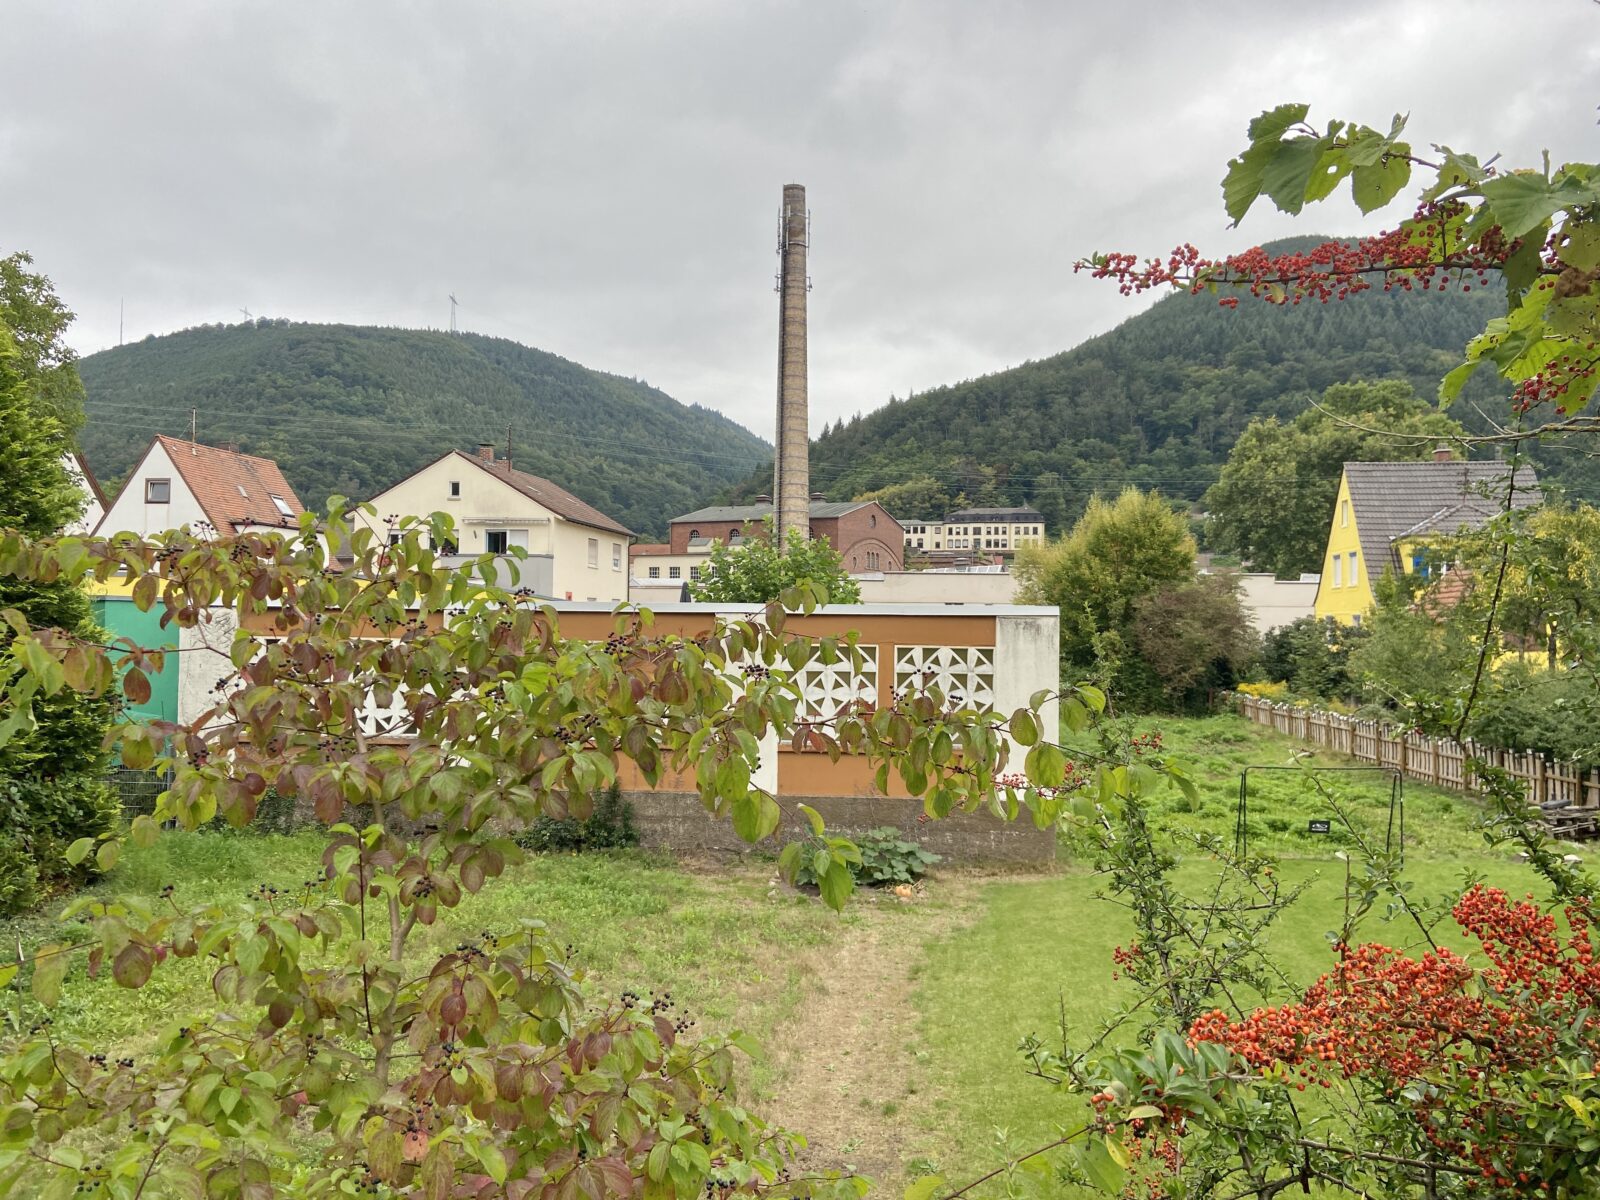 Wandern in der Pfalz: "Aussichten der Tuchmacher" bei Lambrecht